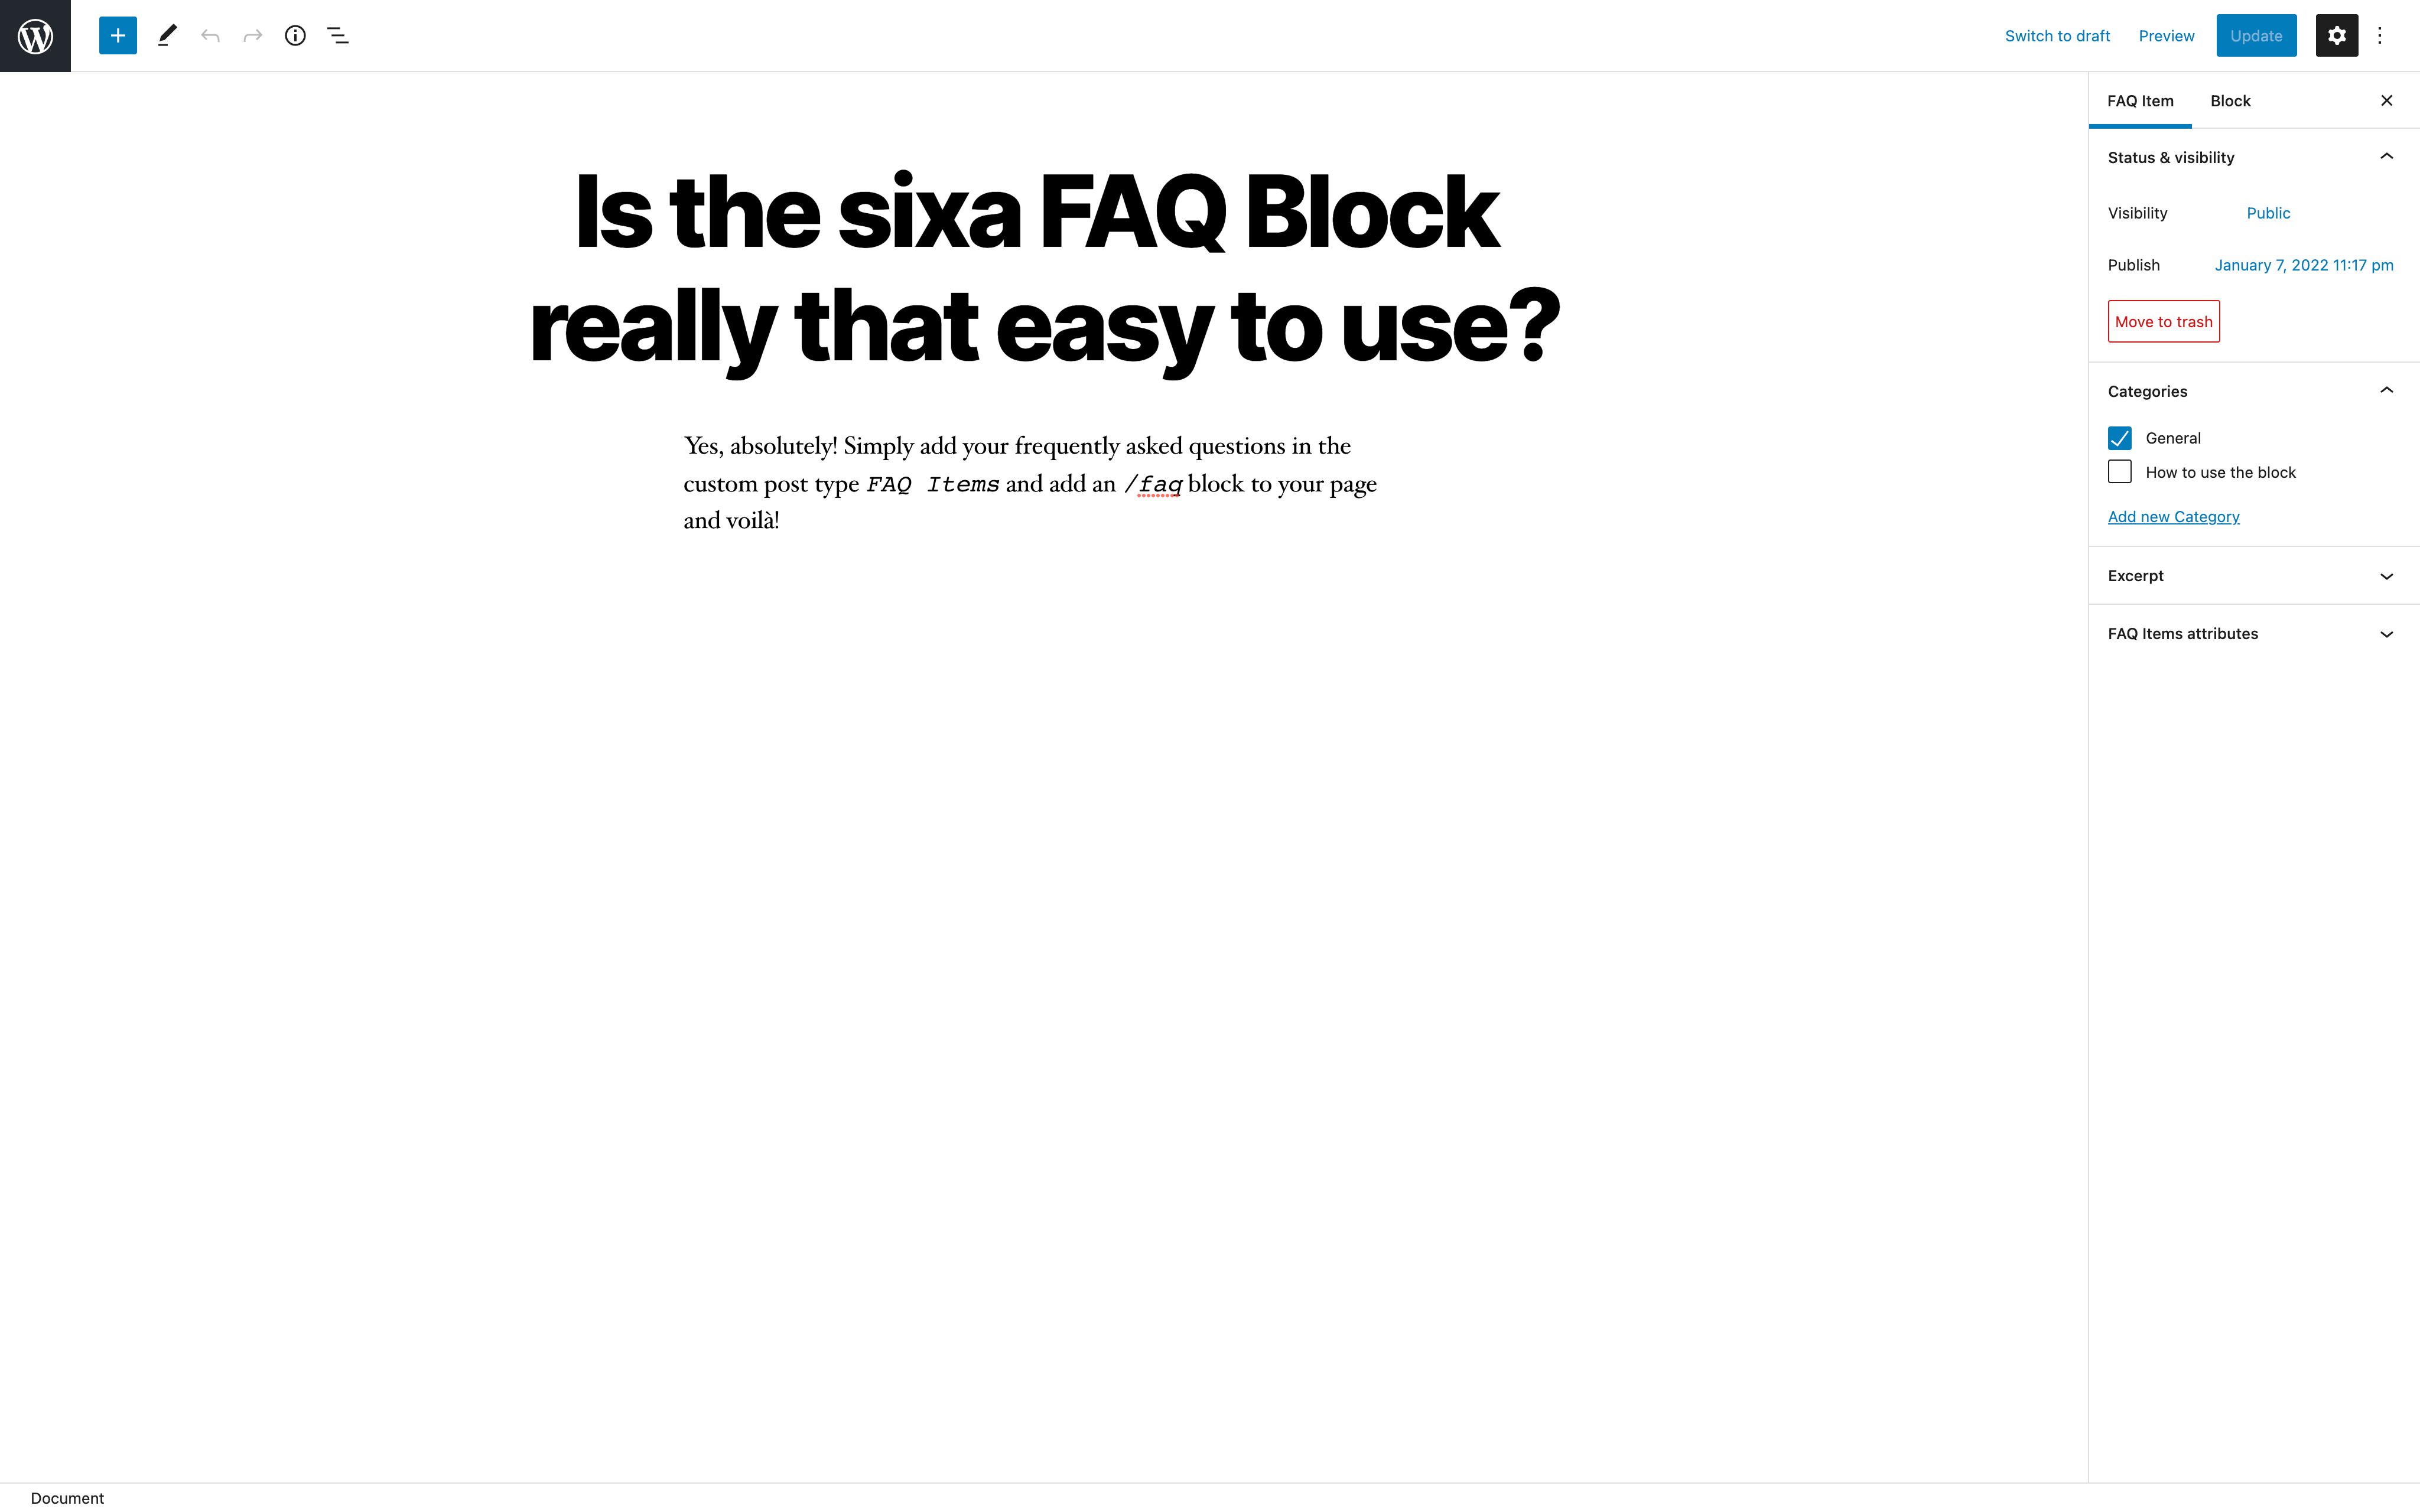 Add an FAQ item